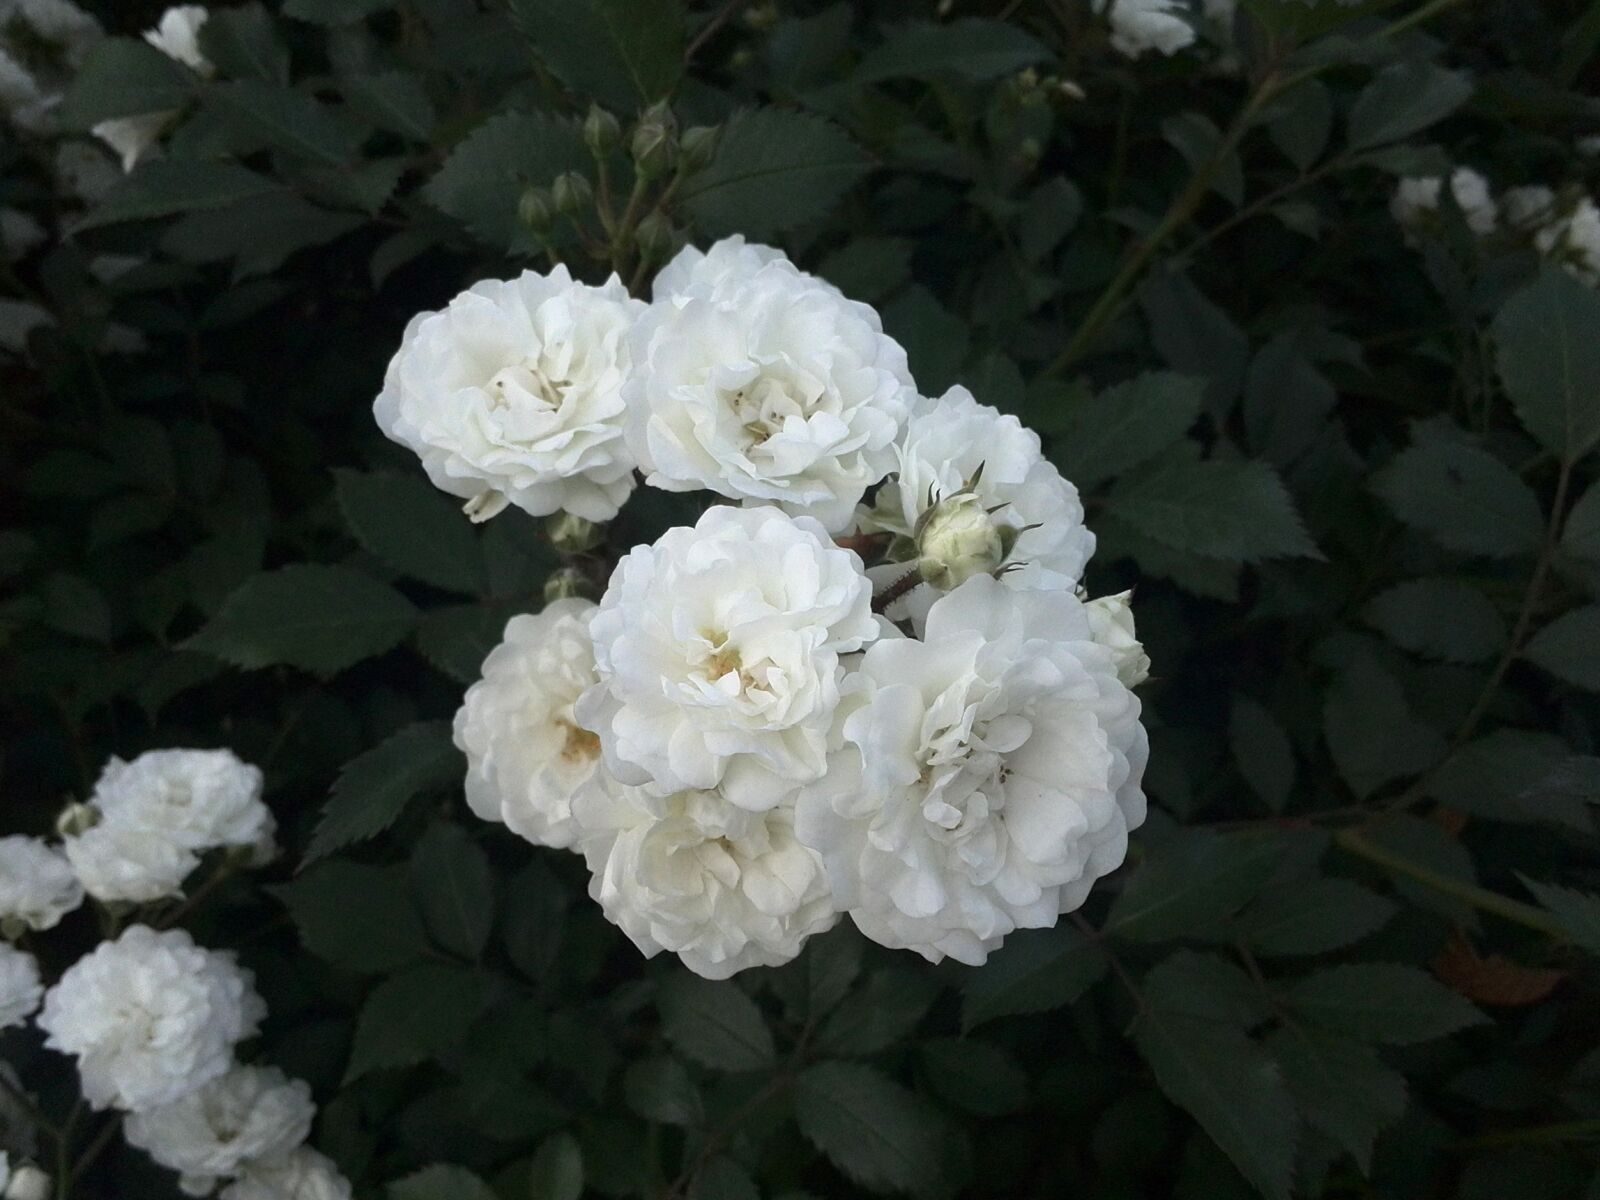 HUAWEI P6-U06 sample photo. Rose, white rose, summer photography